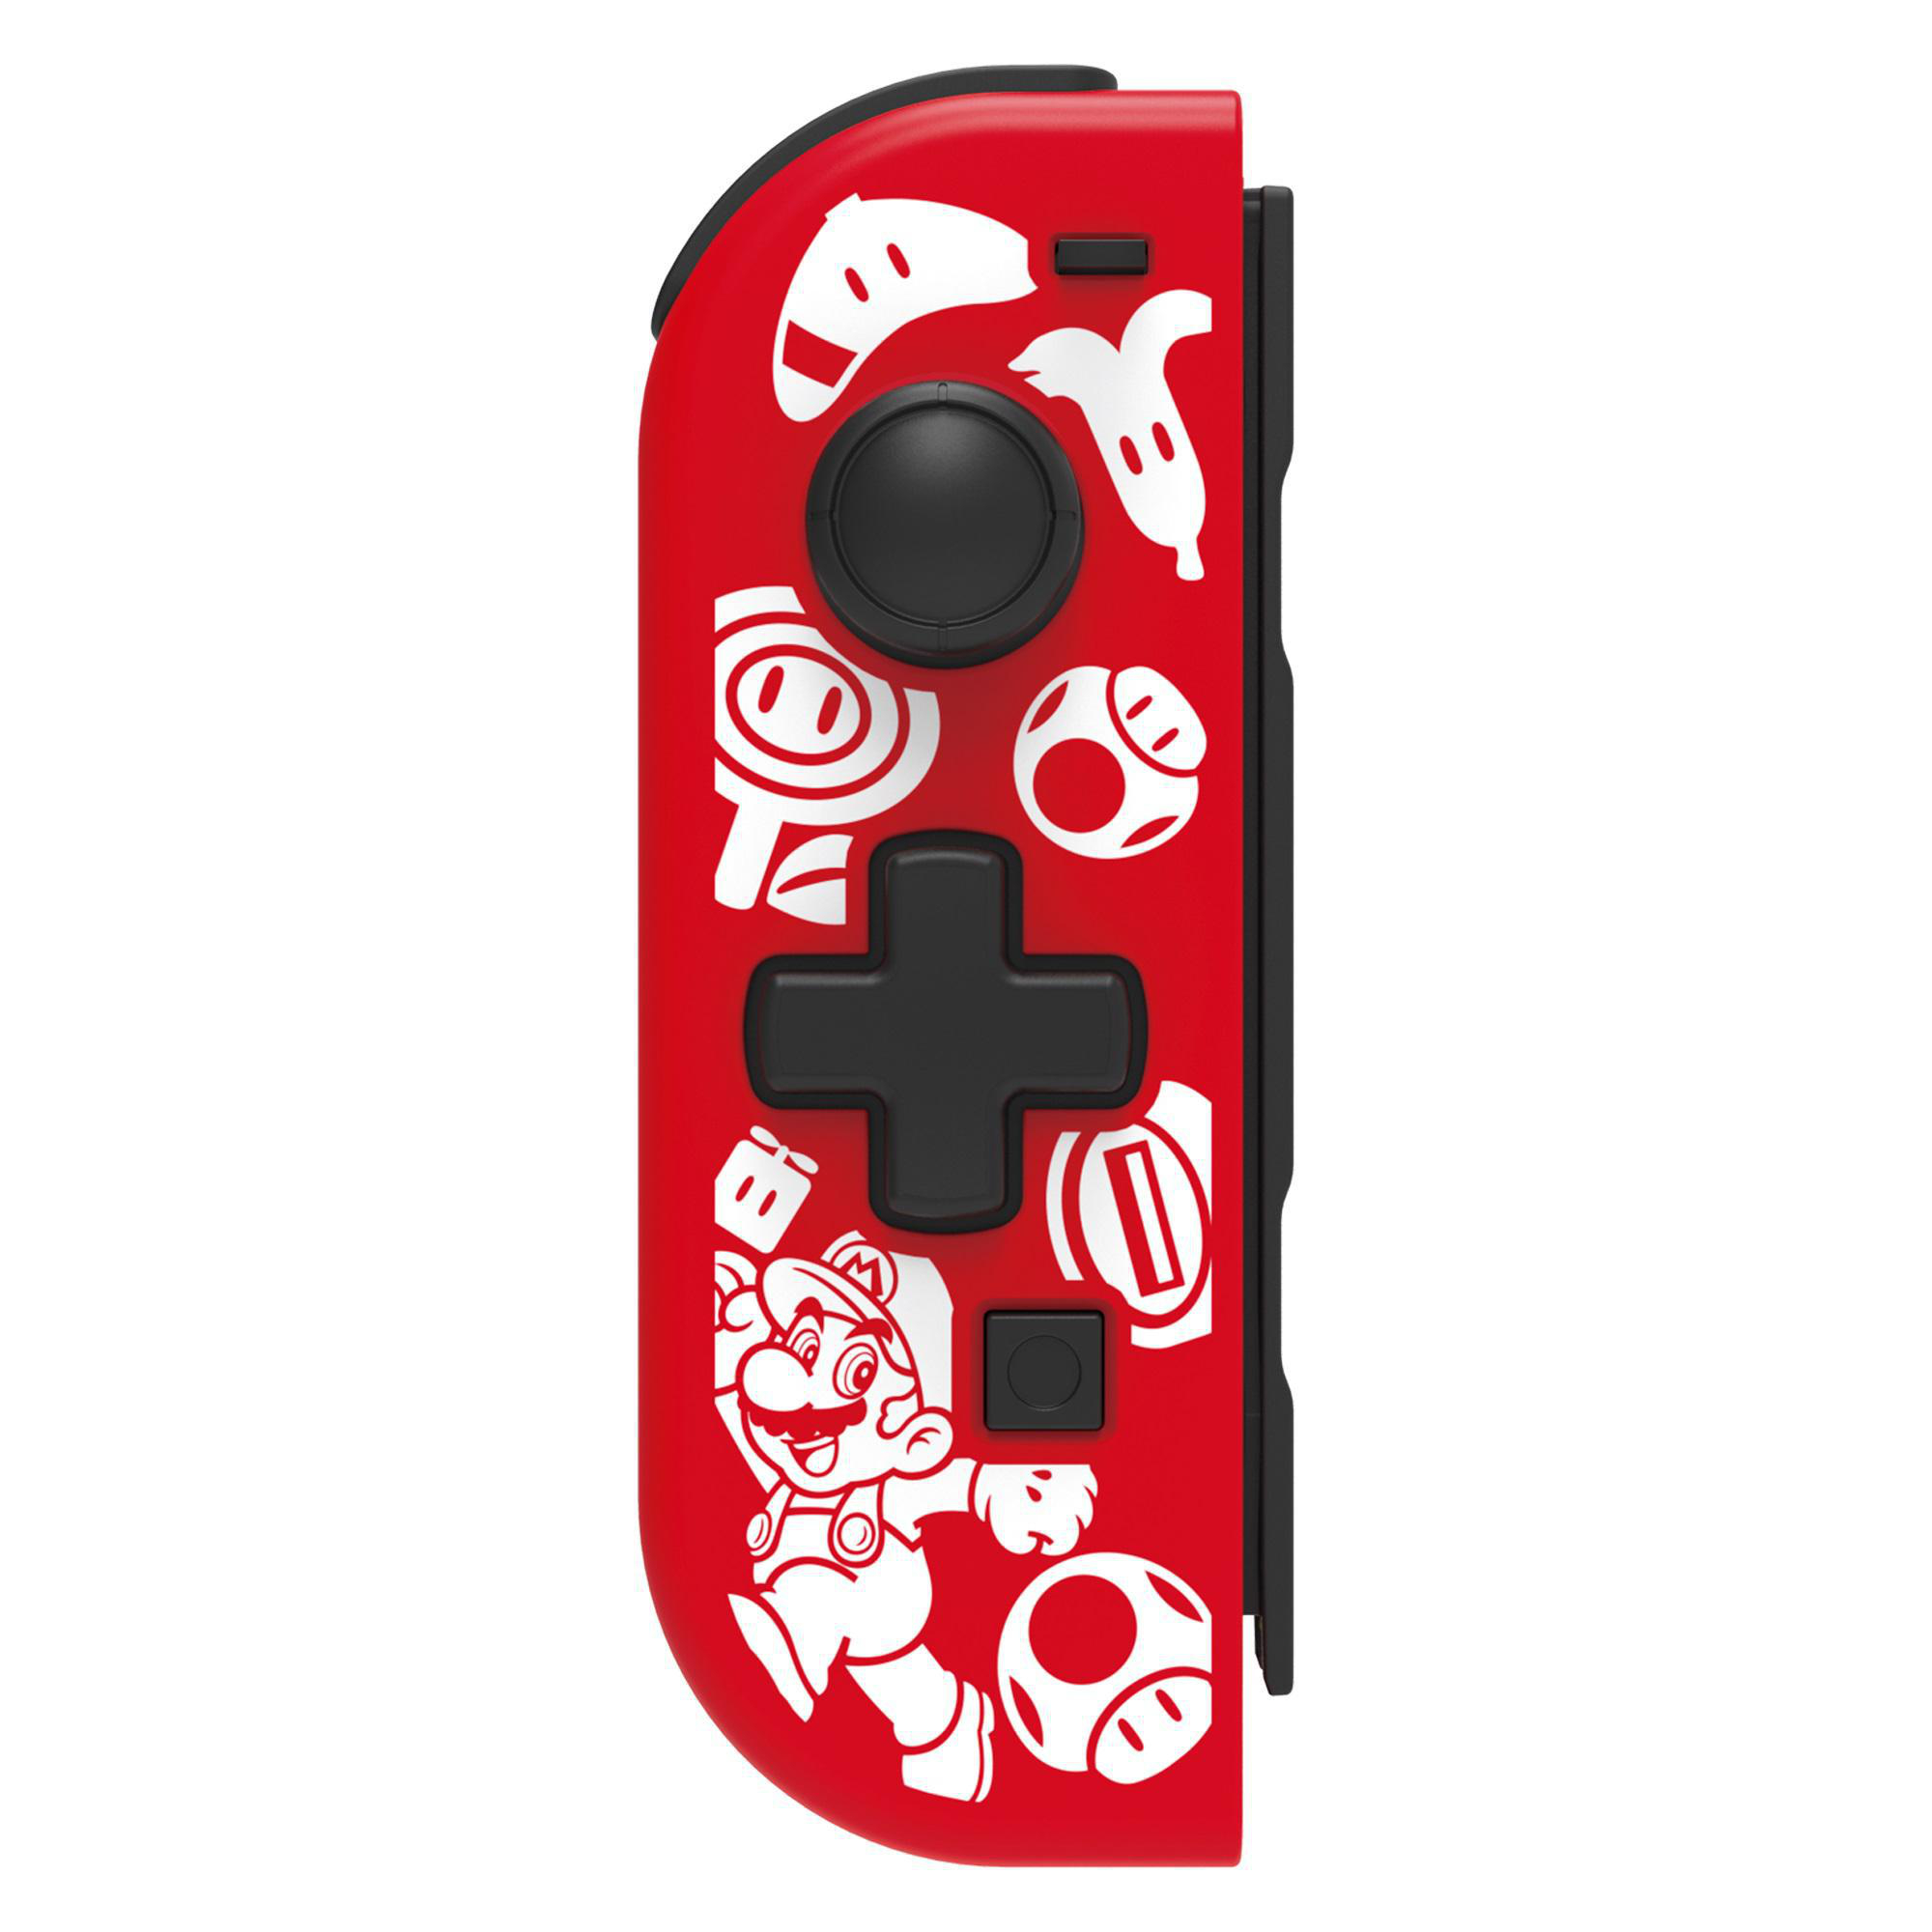 HORI D-Pad - Super Mario Nintendo Switch Controller für Rot